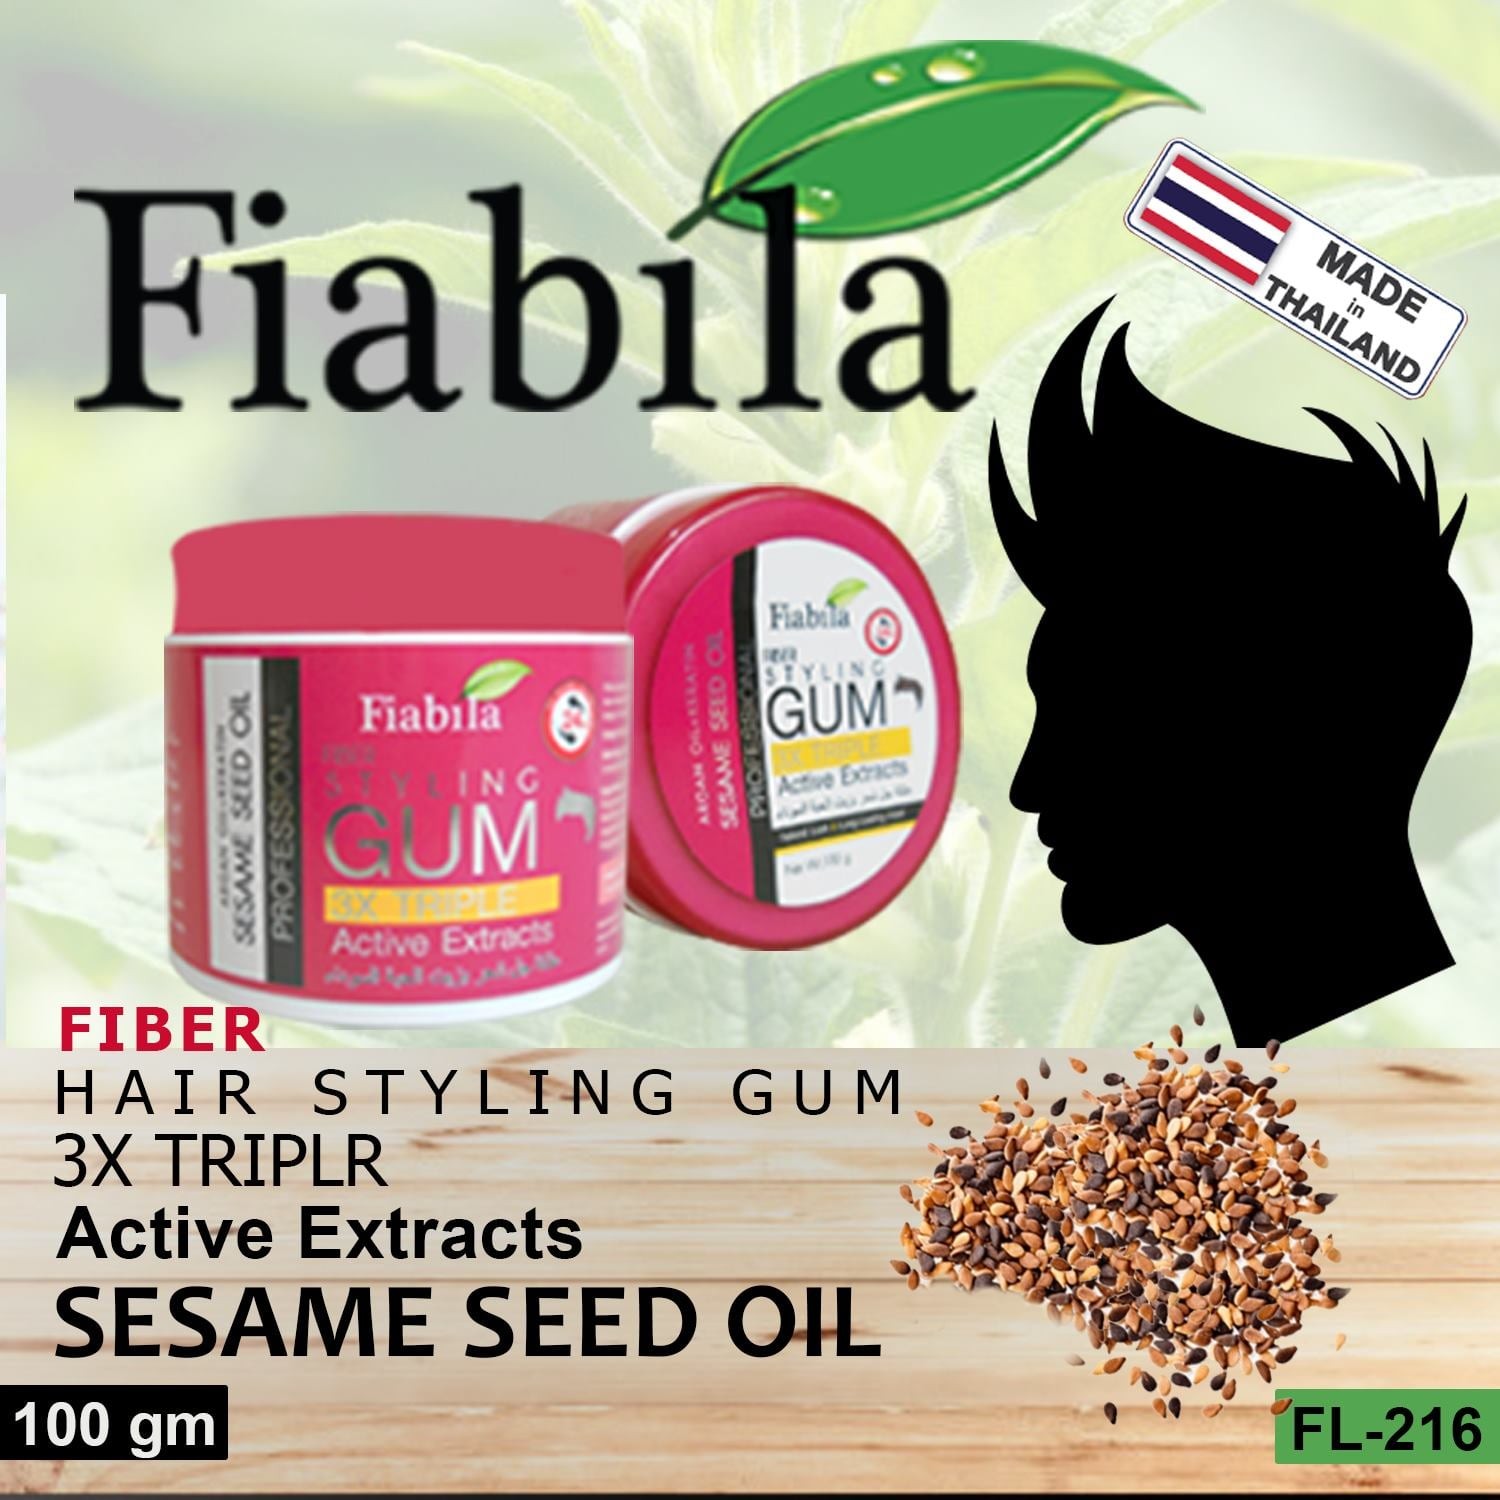 Faibila Fiber Hair Styling Gum Sesame Seed Oil (100gm)